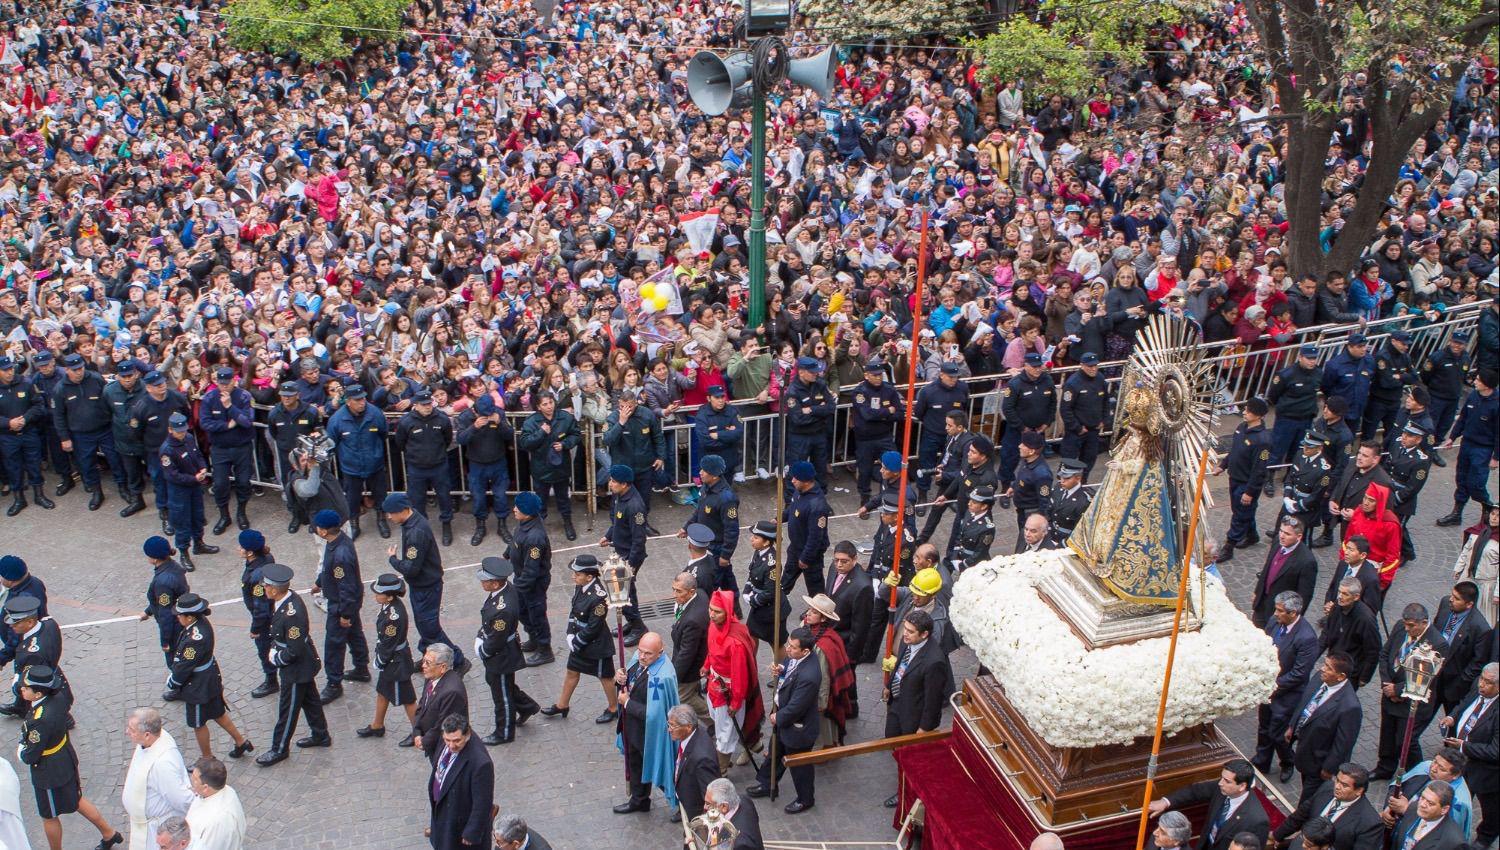 Las autoridades eclesi�sticas anunciaron que las im�genes del Señor y la Virgen del Milagro saldr�n en
procesión sin fieles alrededor de la plaza 9 de Julio